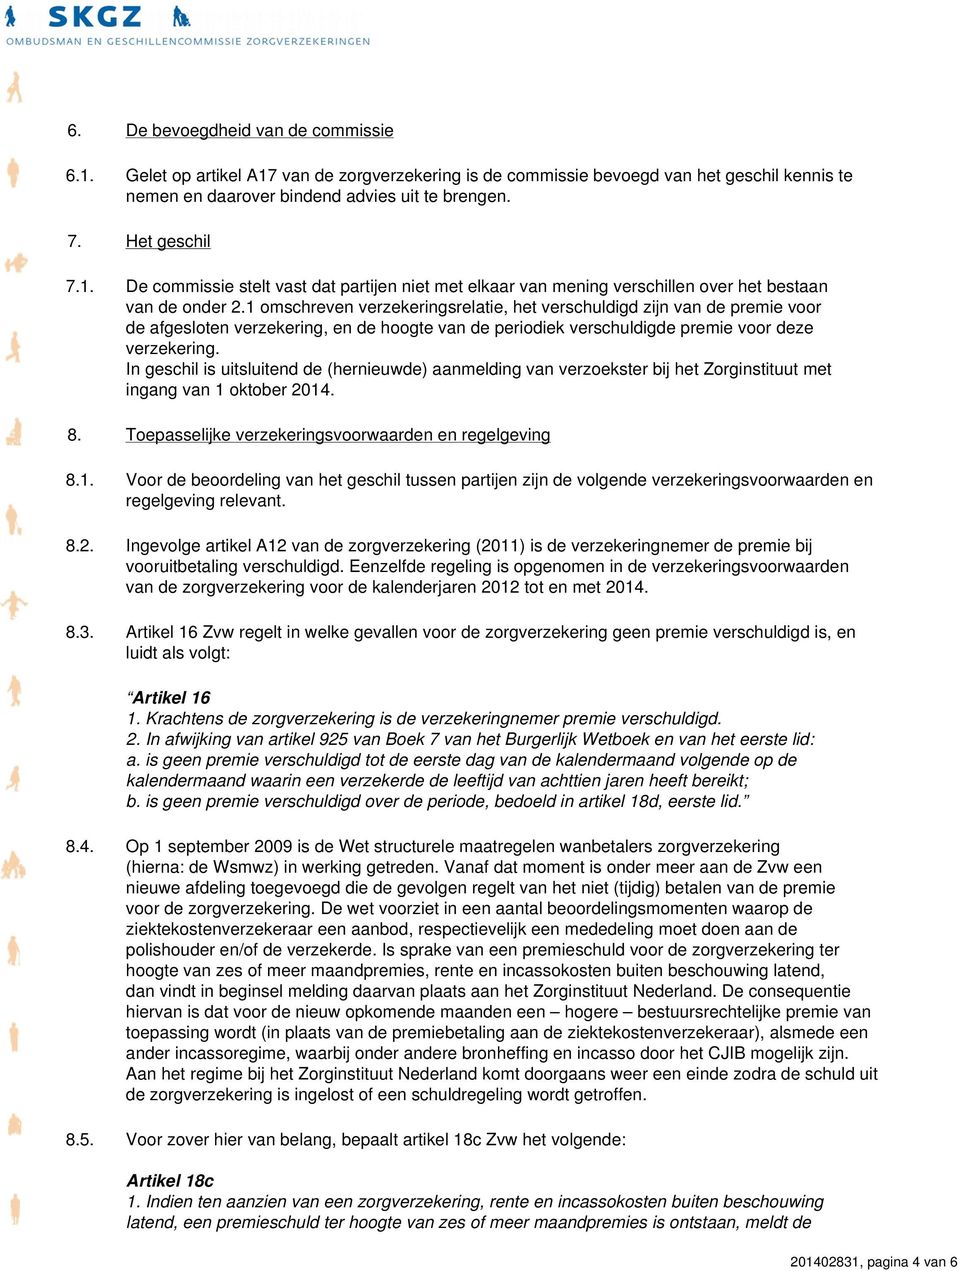 1 omschreven verzekeringsrelatie, het verschuldigd zijn van de premie voor de afgesloten verzekering, en de hoogte van de periodiek verschuldigde premie voor deze verzekering.